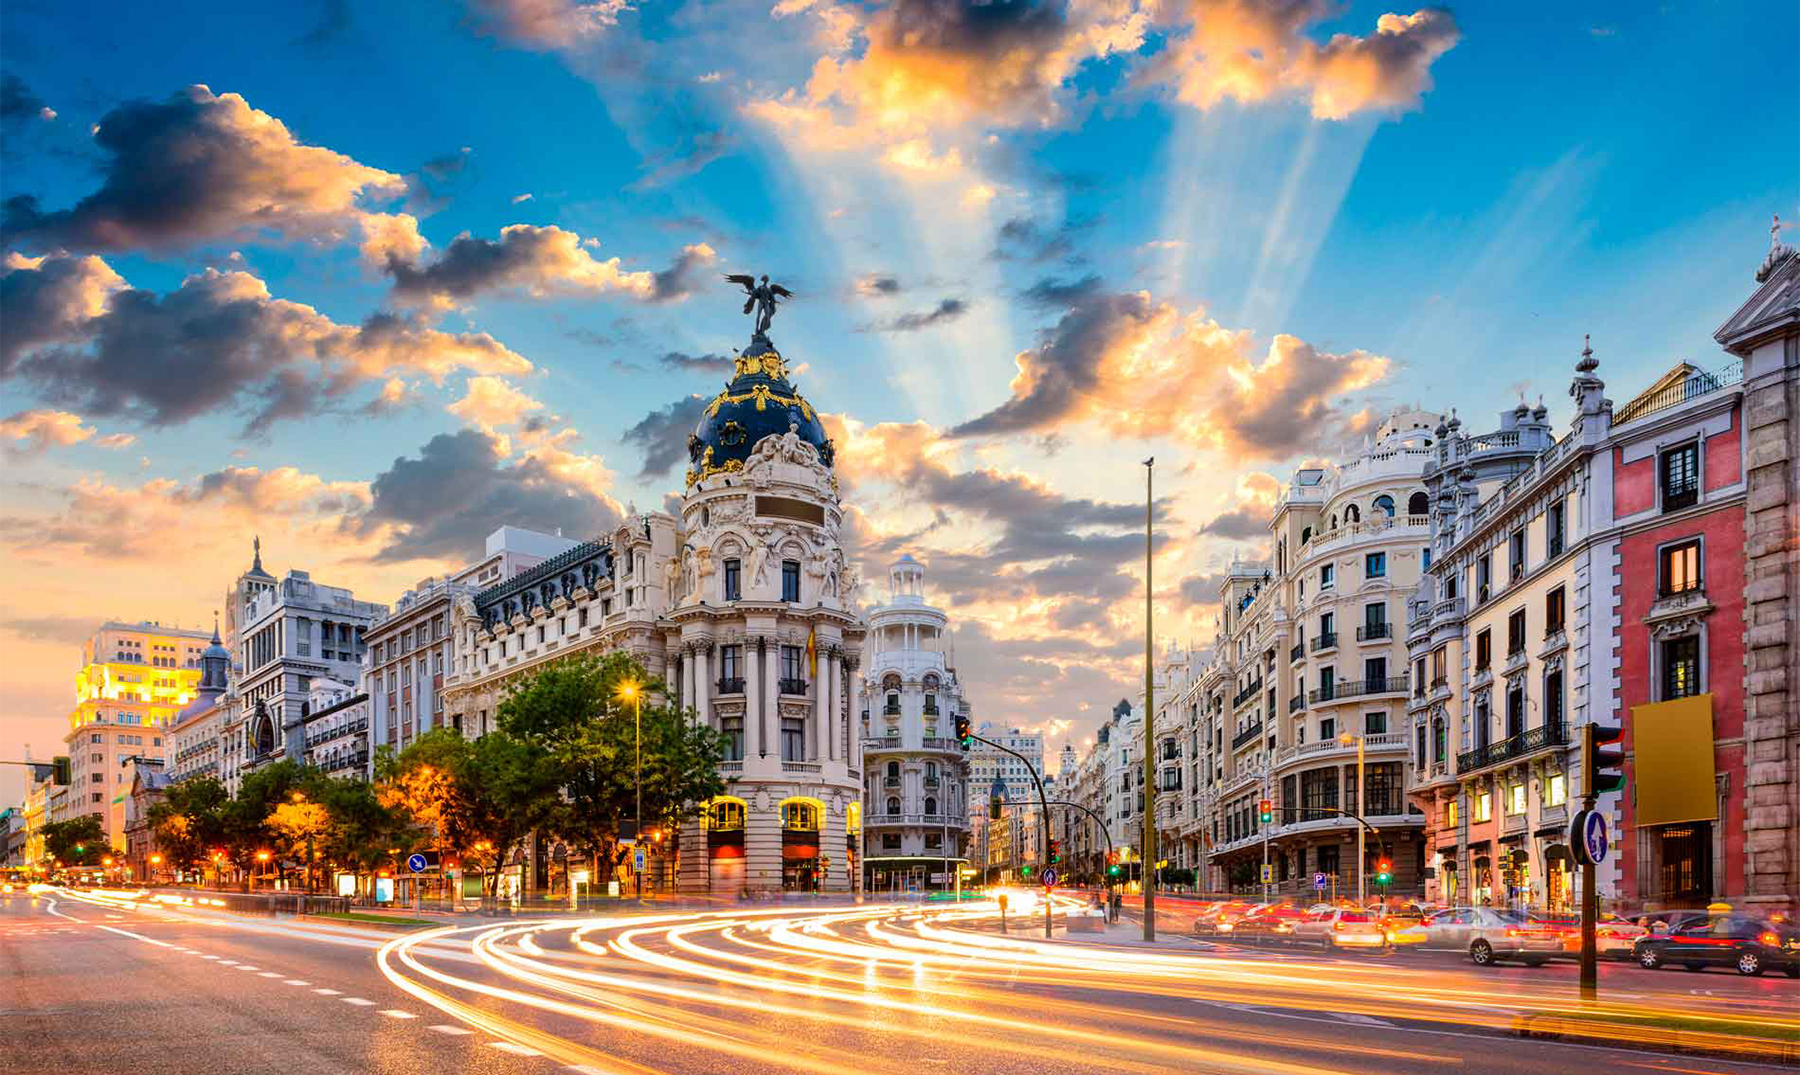 35 Curiosidades De Madrid Asombrosas Con Imagenes - ciudad de madrid roblox